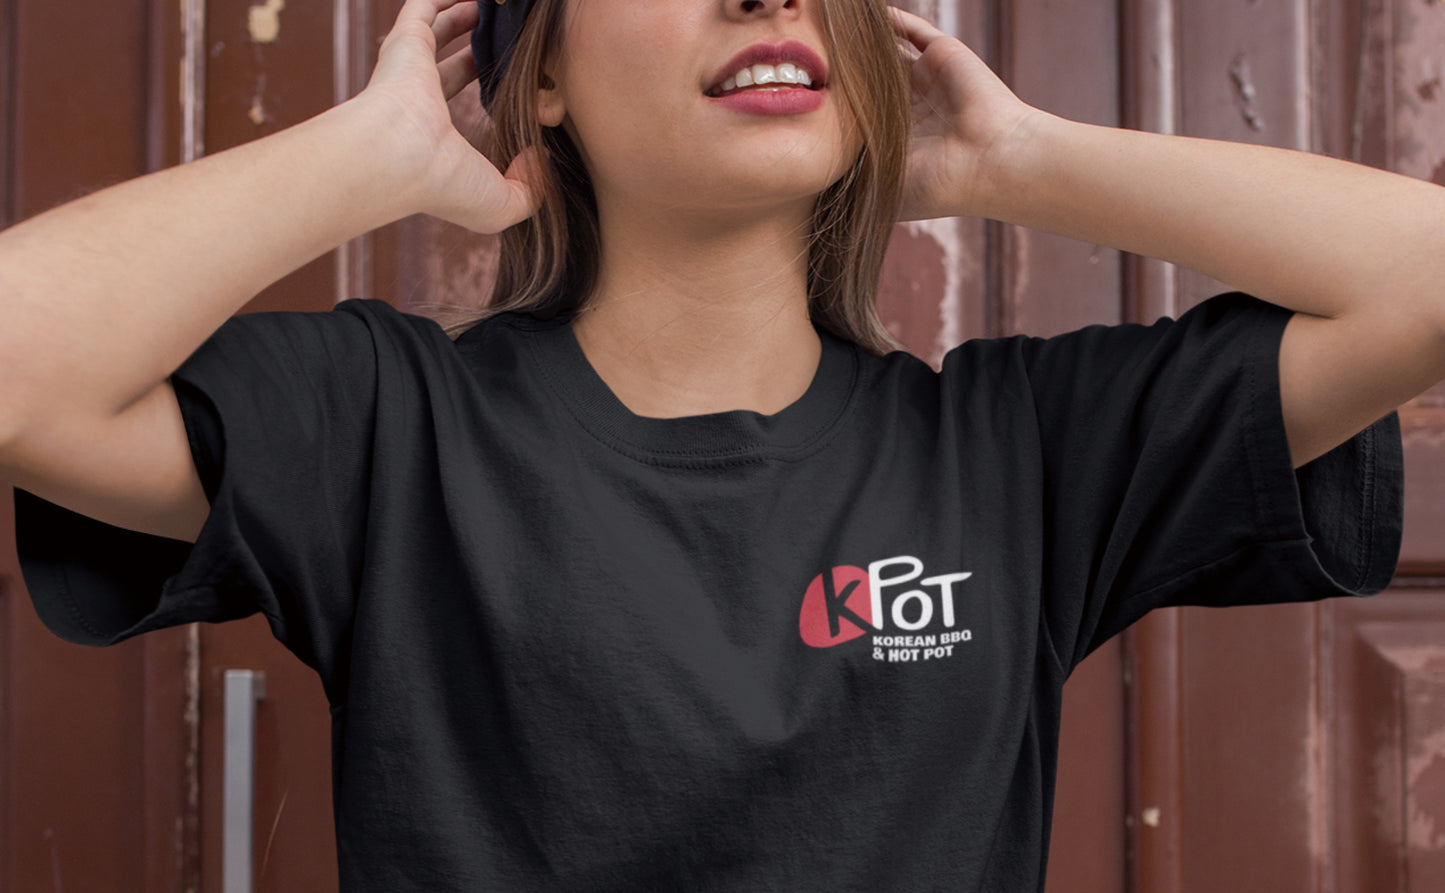 
                  
                    KPOT T-Shirt
                  
                